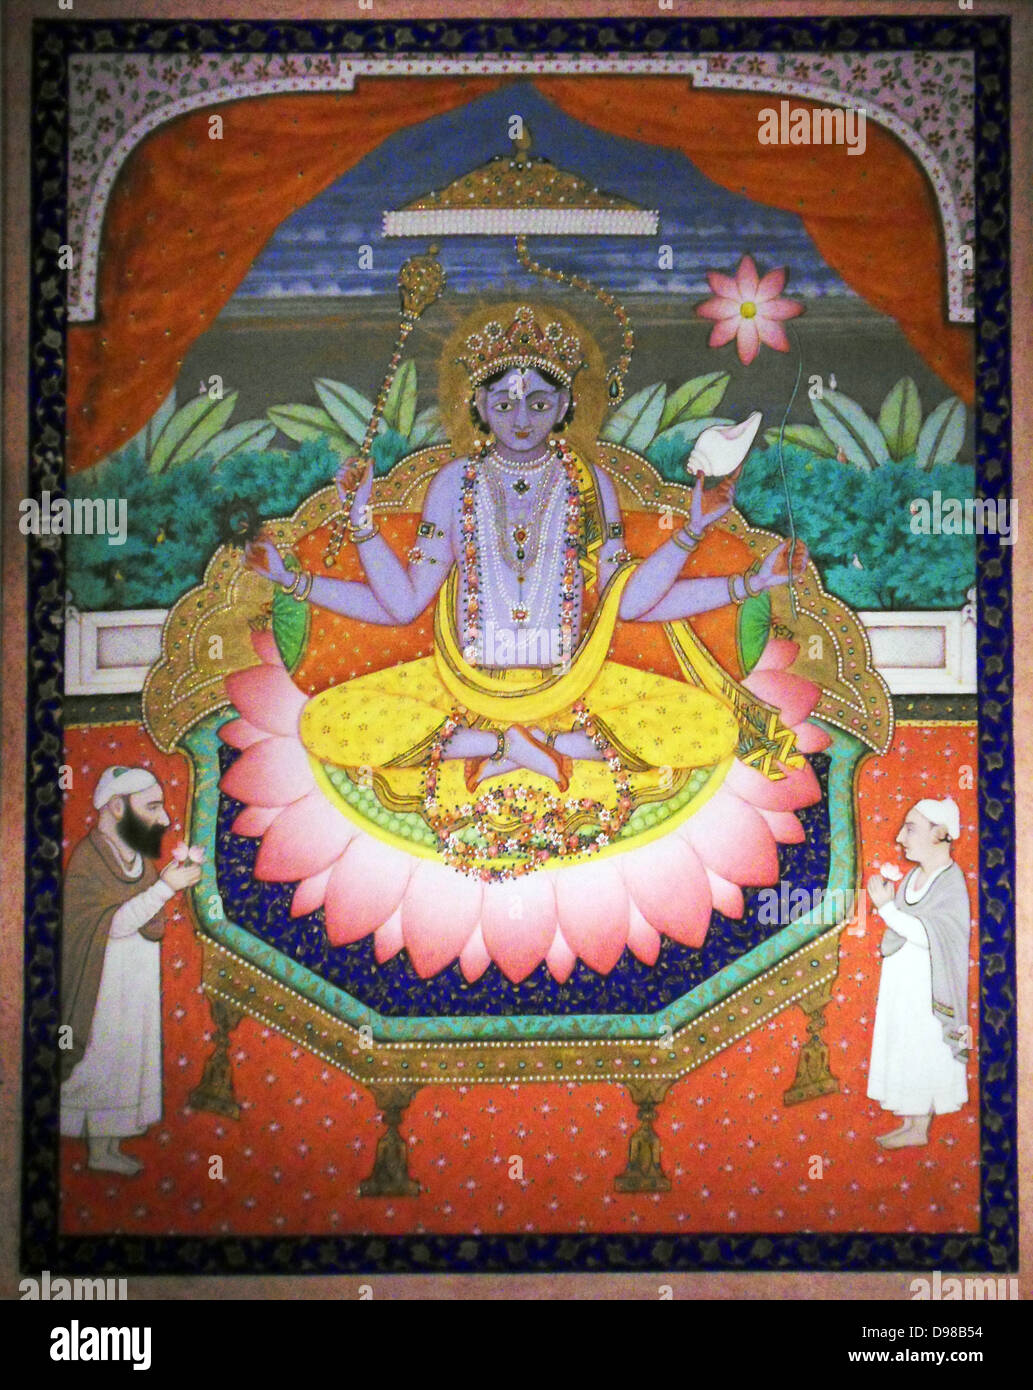 Vishnu auf einem Lotus petal Thron. Anfang 1900, Indien. Blattgold und Gouache auf Papier. Vishnu ist der Oberste Gott in der Tradition des Hinduismus Vaishnavite Stockfoto